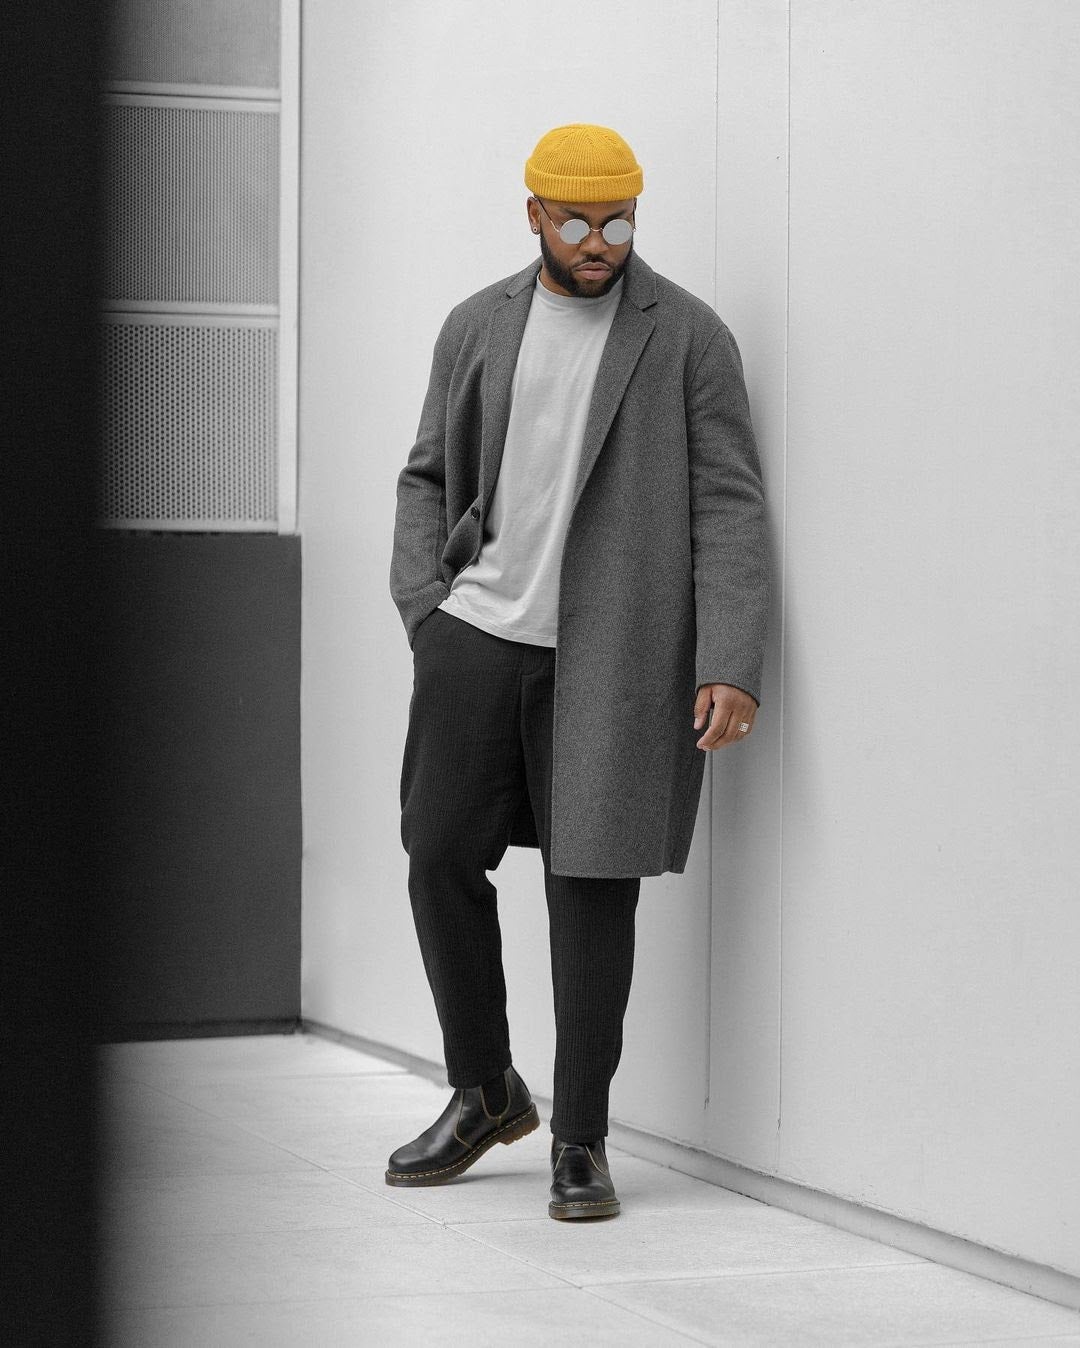 Black Male Fashion Creatives To Follow On TikTok